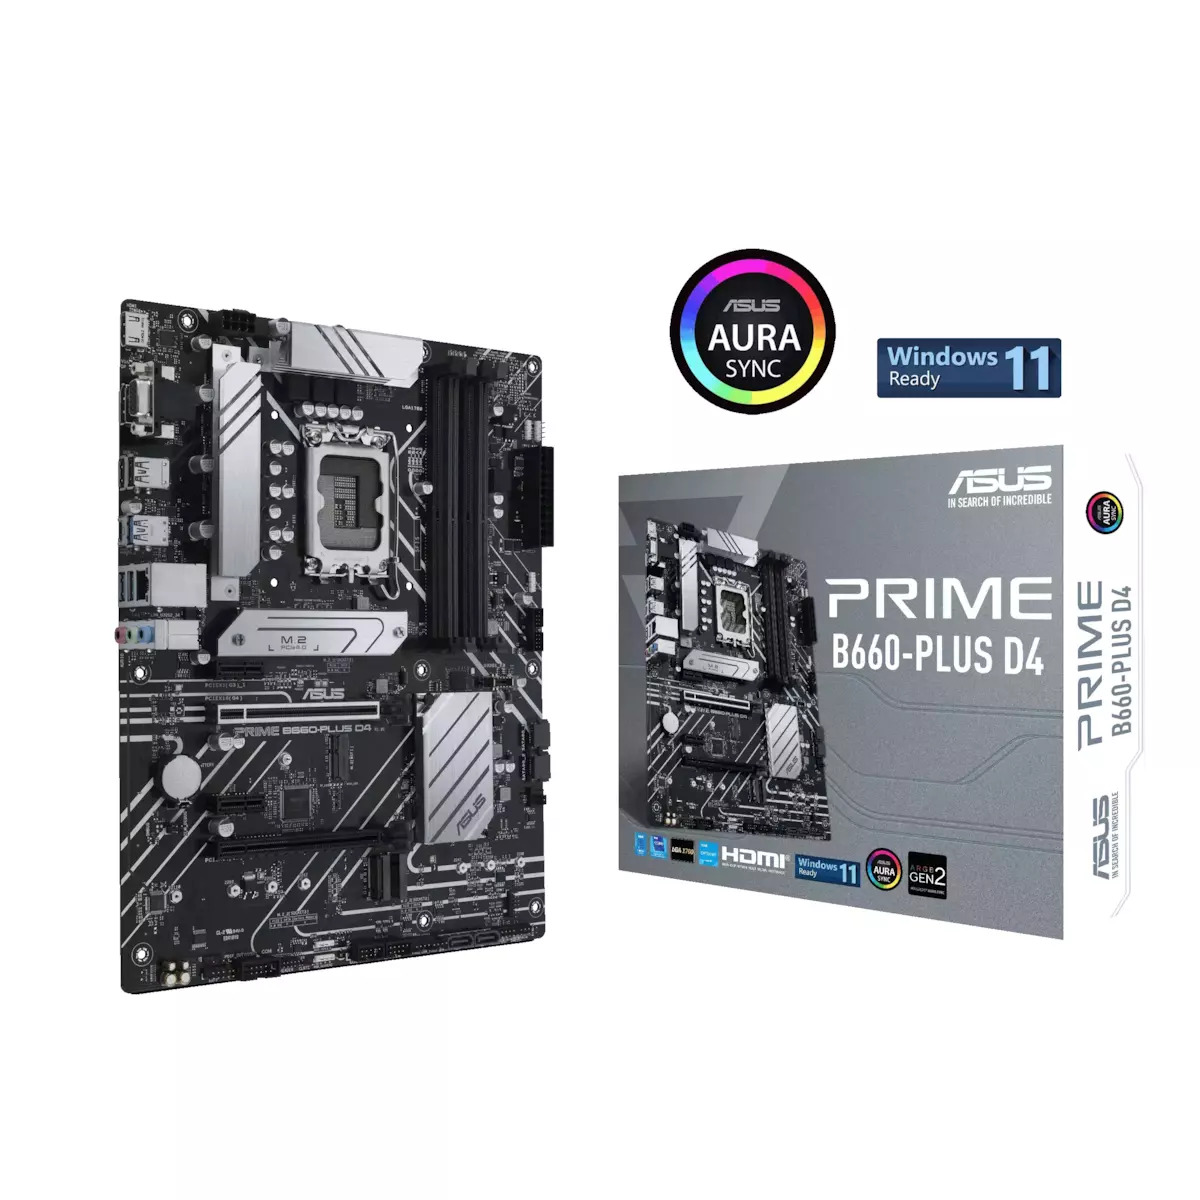 Asus Prime B660-Plus D4 Motherboard ATX με Intel 1700 Socket